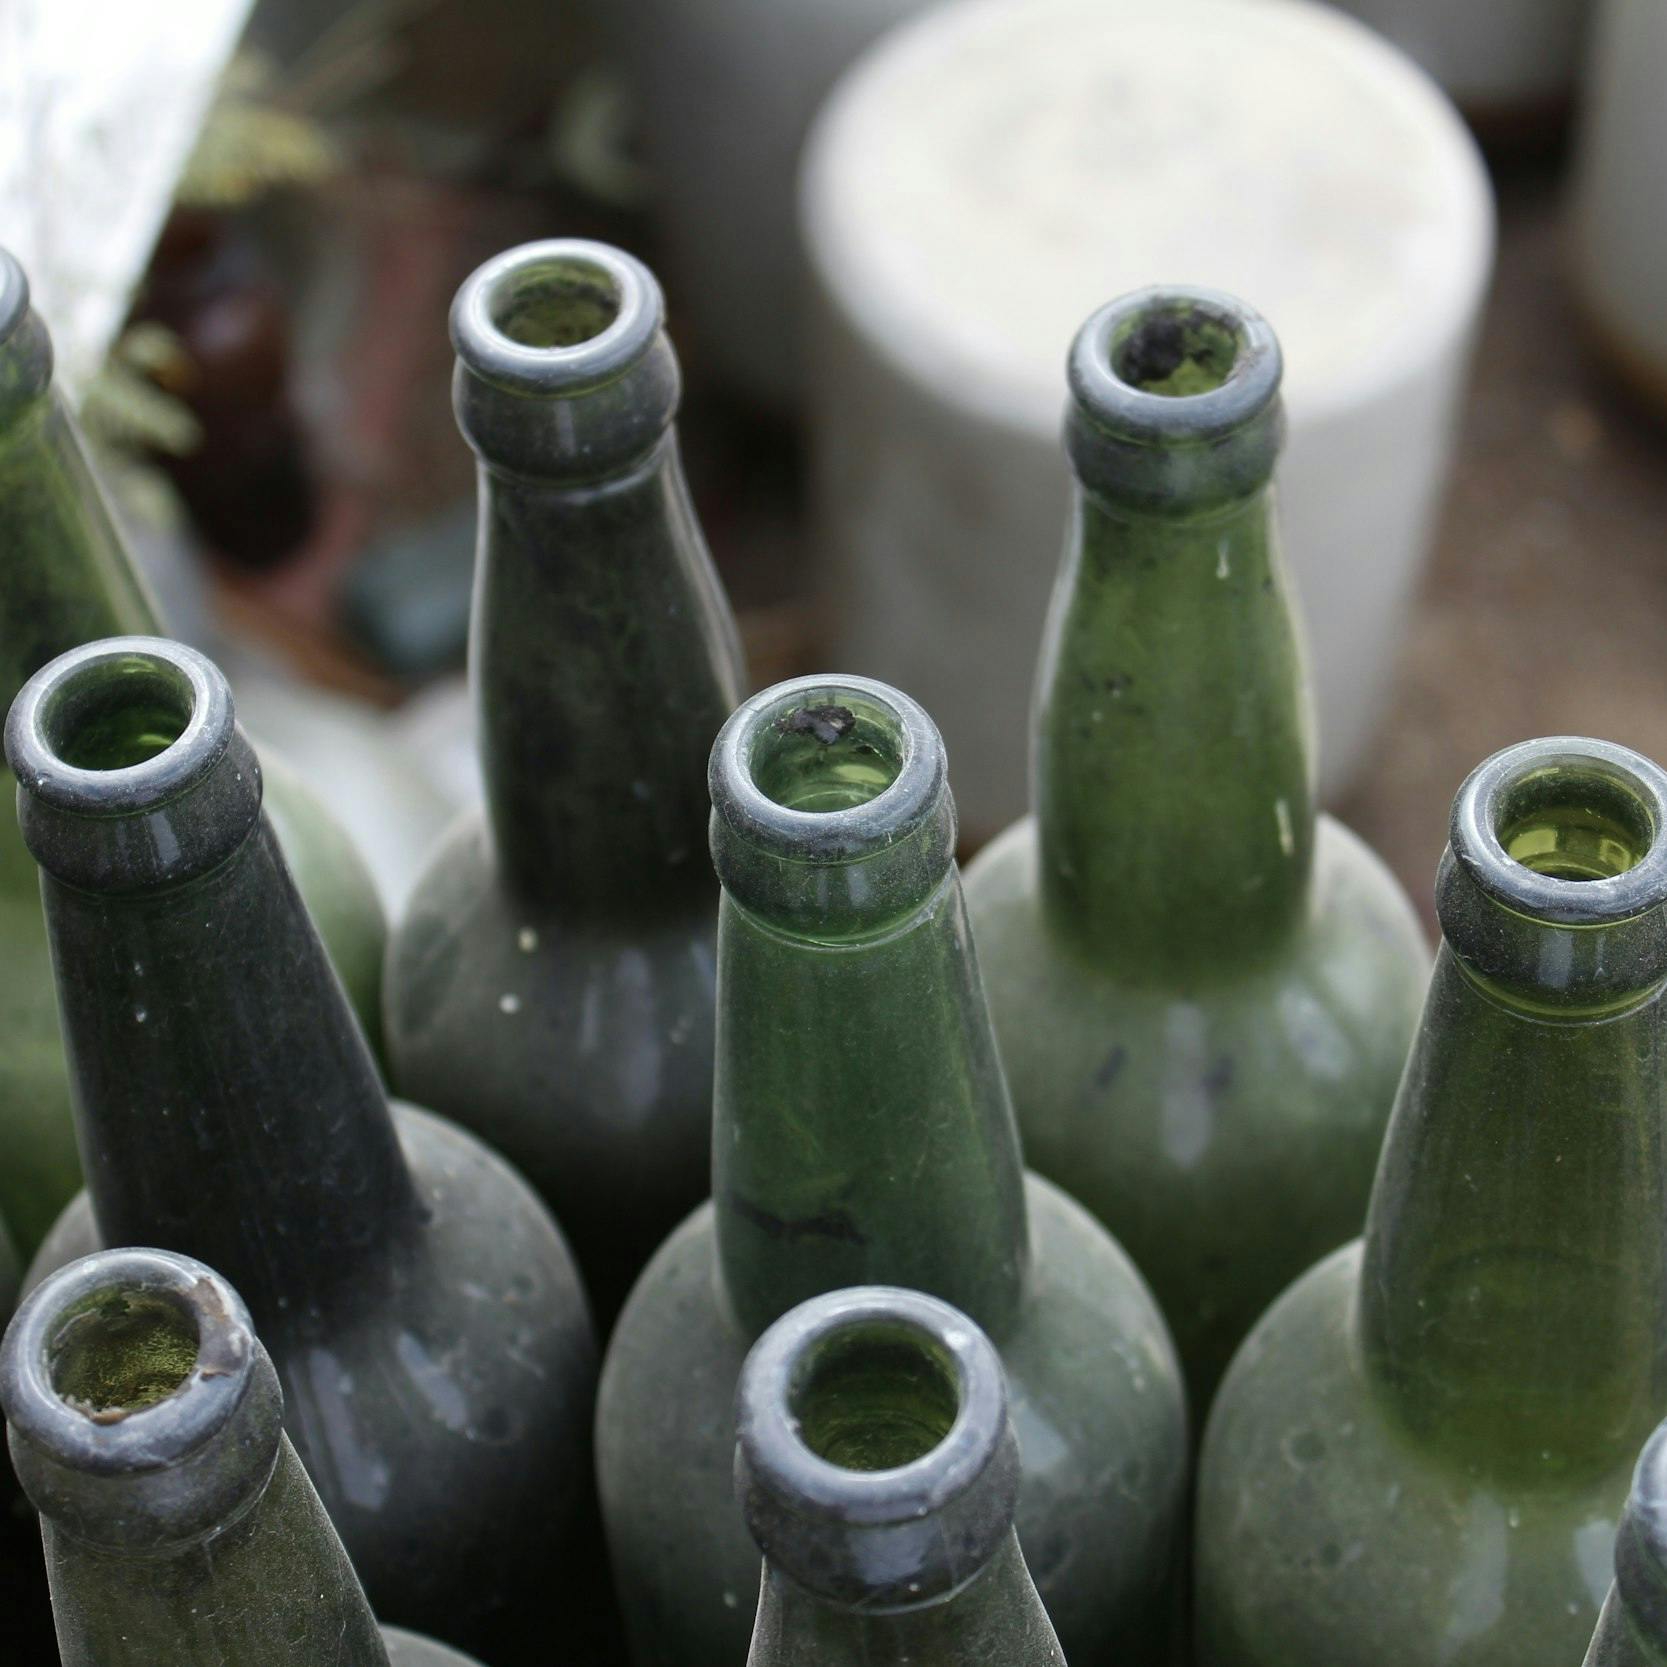 Bottiglie in vetro di colore verde, stappate e sporche di polvere.